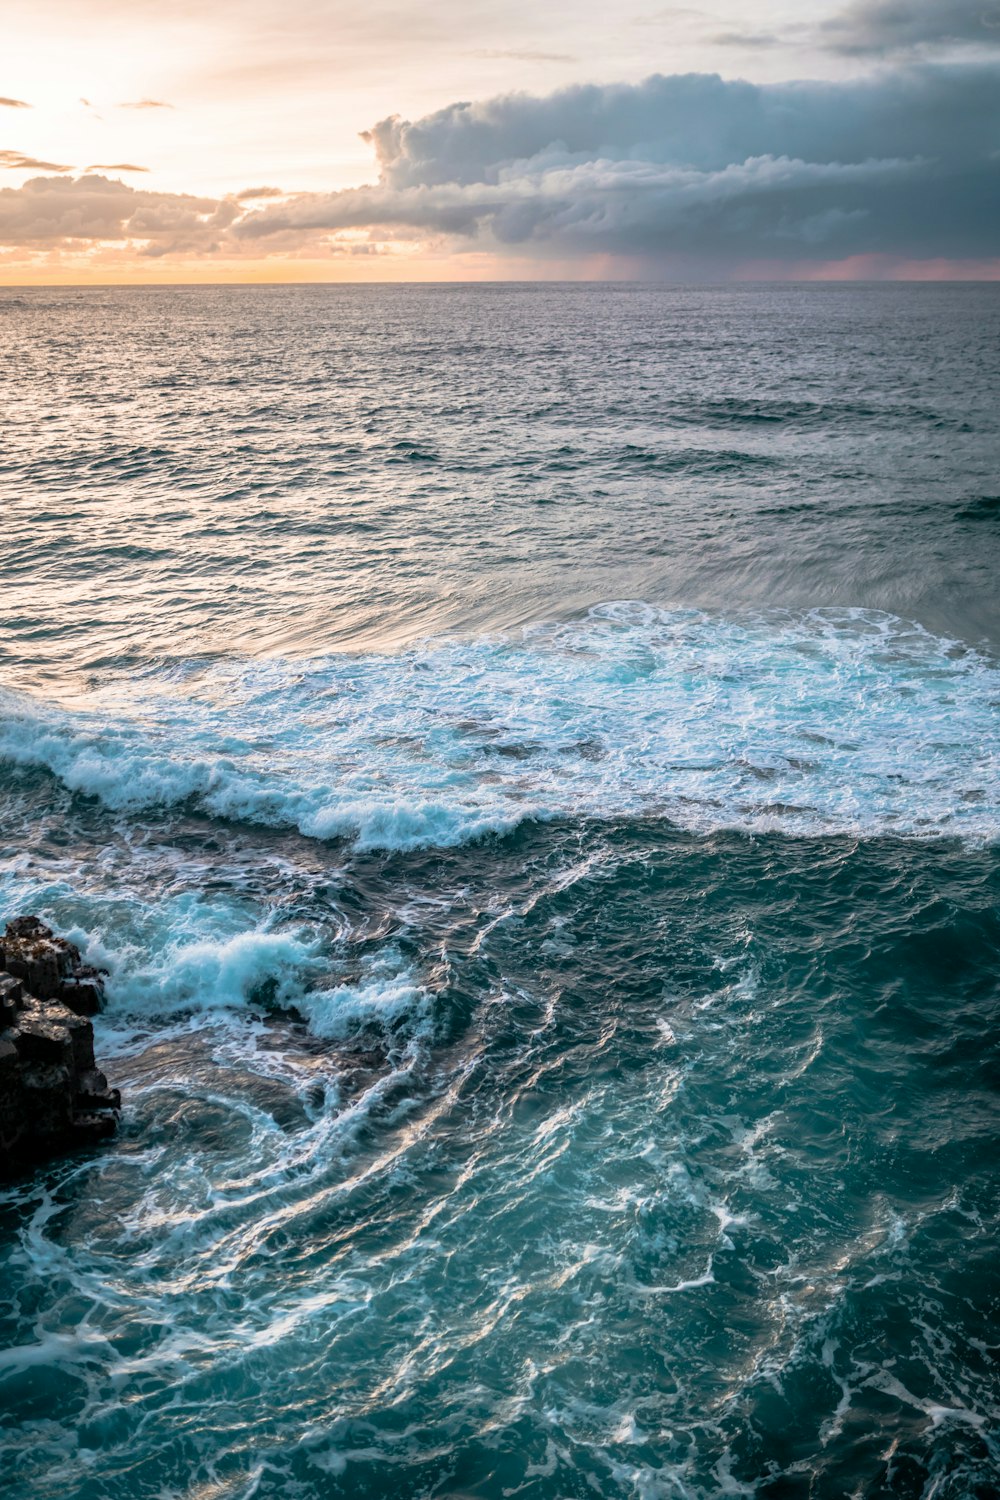 Les vagues de l’océan s’écrasent sur la formation de roches noires pendant la journée